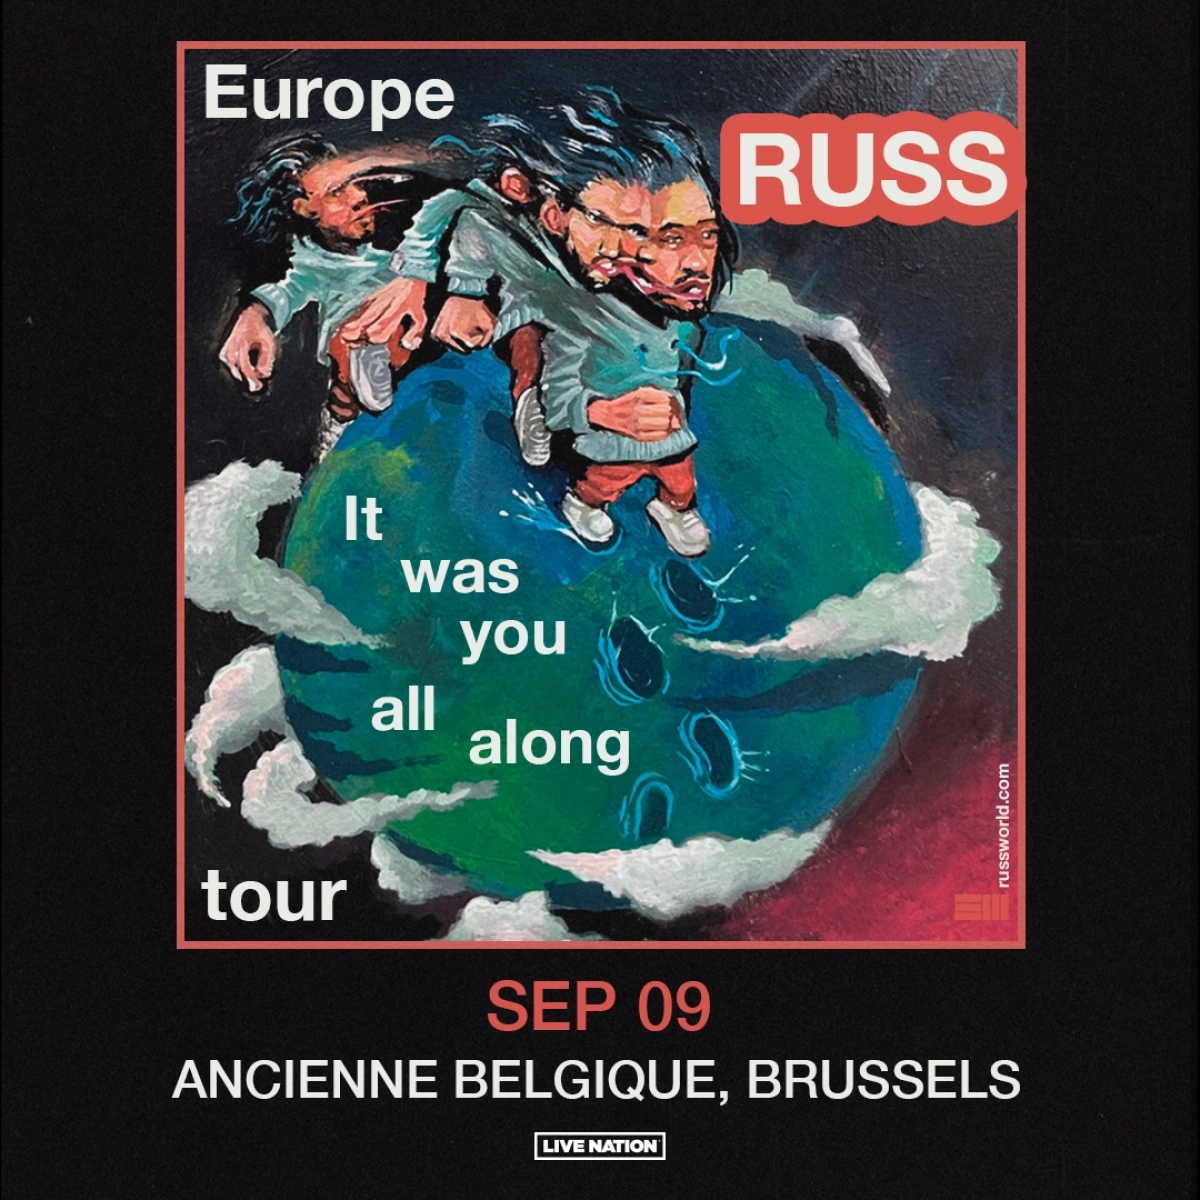 Russ in der Ancienne Belgique Tickets